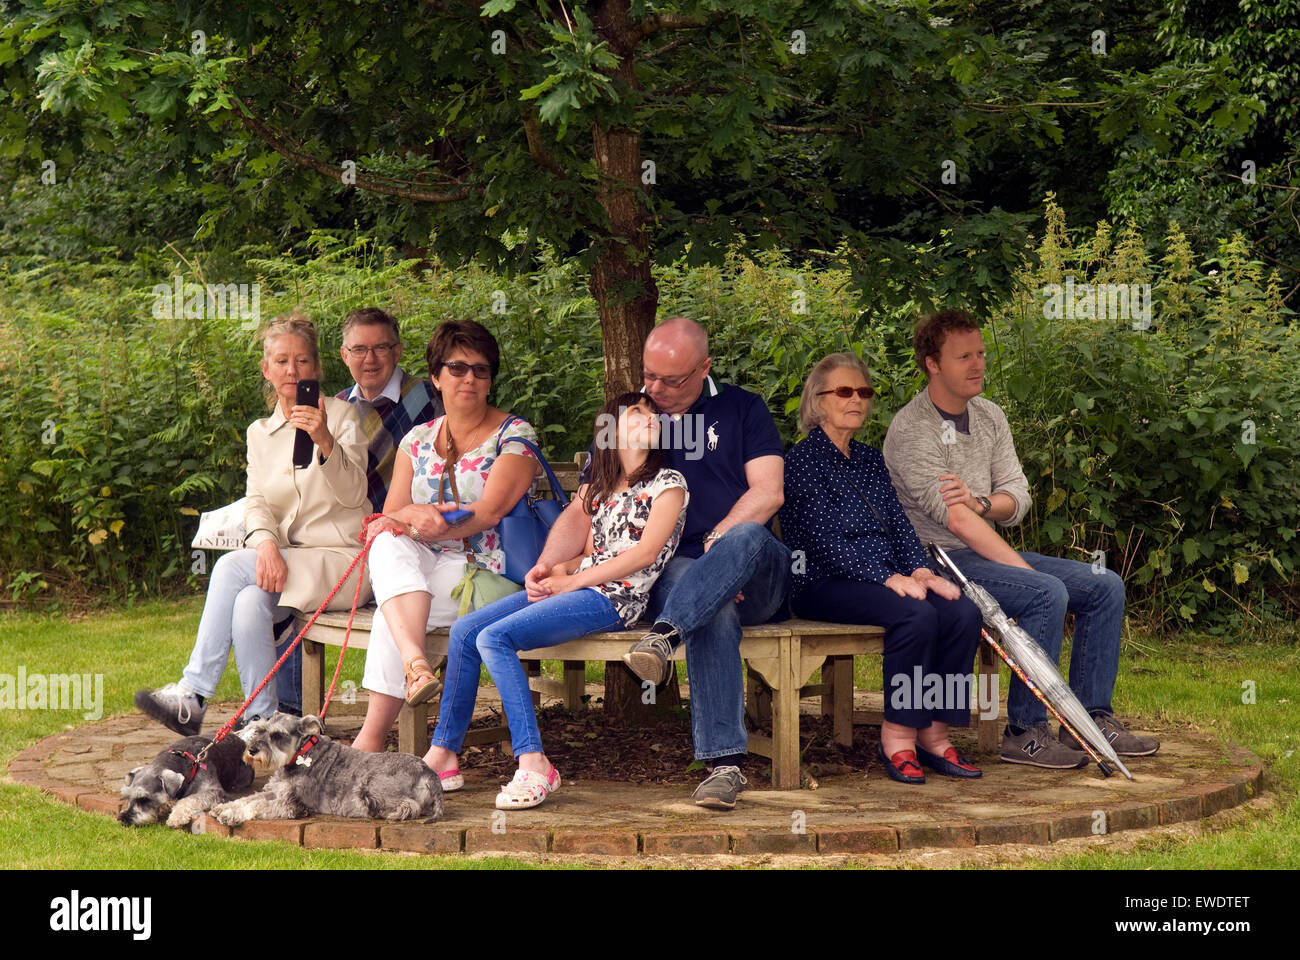 Gruppe von Menschen (& 2 Hunde) sitzen auf einer Bank unter einem Baum gerade eine lokale Sommer Community Parade, Frensham, Surrey, UK. Stockfoto